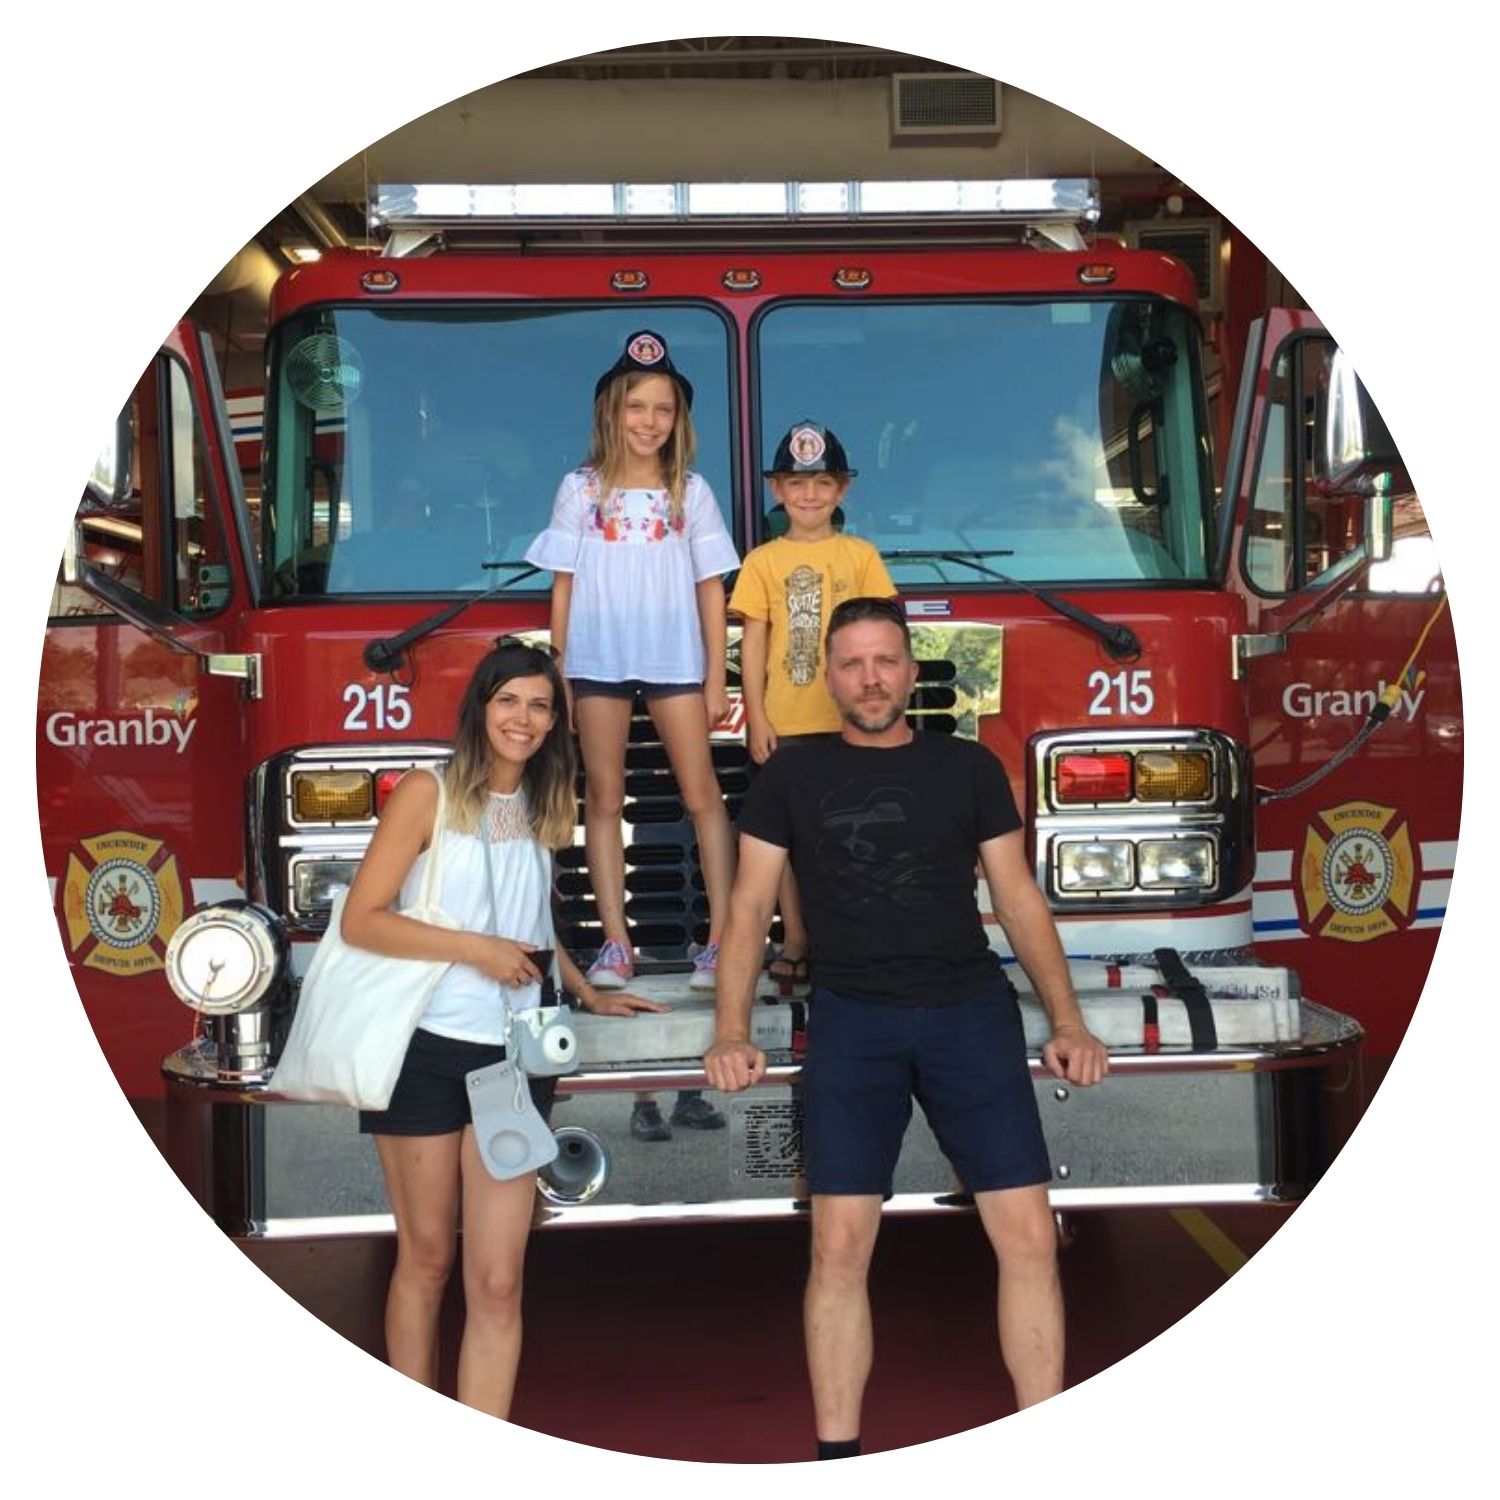 Voyage au Québec en famille avec l'avis de Julie L, une jeune famille posant devant un camion de pompier avec des casques de pompier.